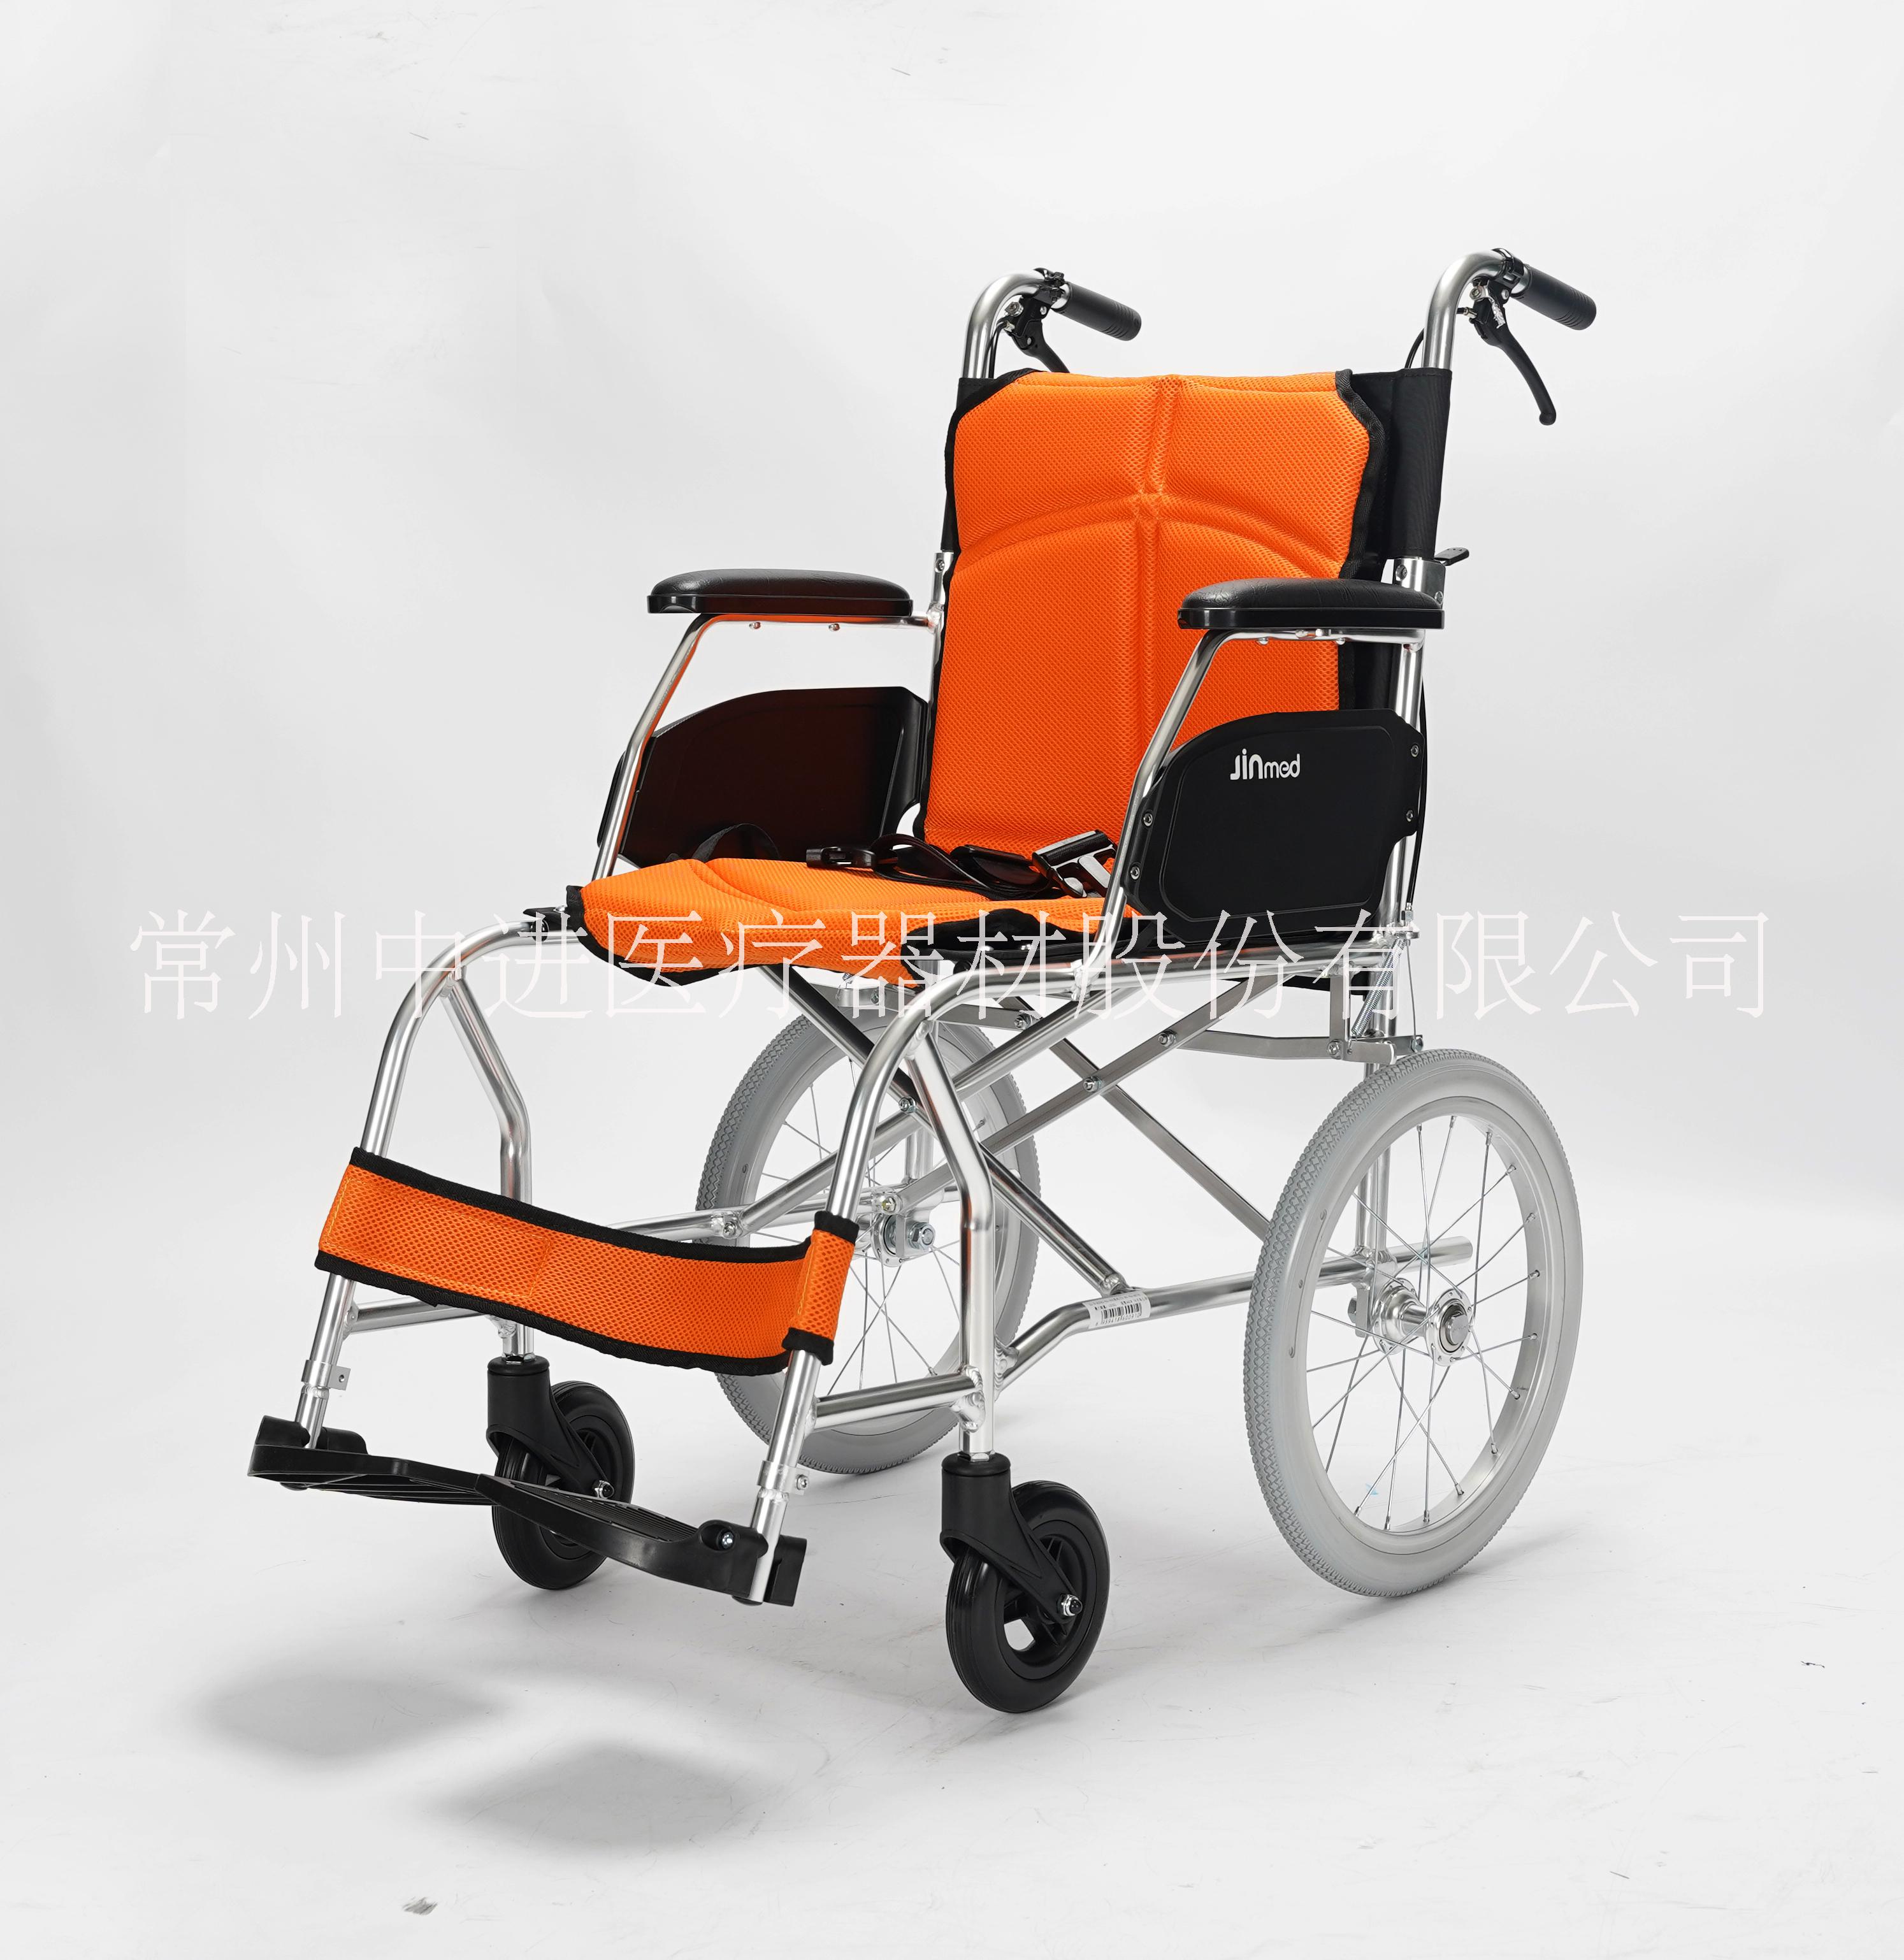 中进高端轮椅航钛铝合金车架折叠轮椅福利机构使用轮椅超轻便携外出旅游轮椅